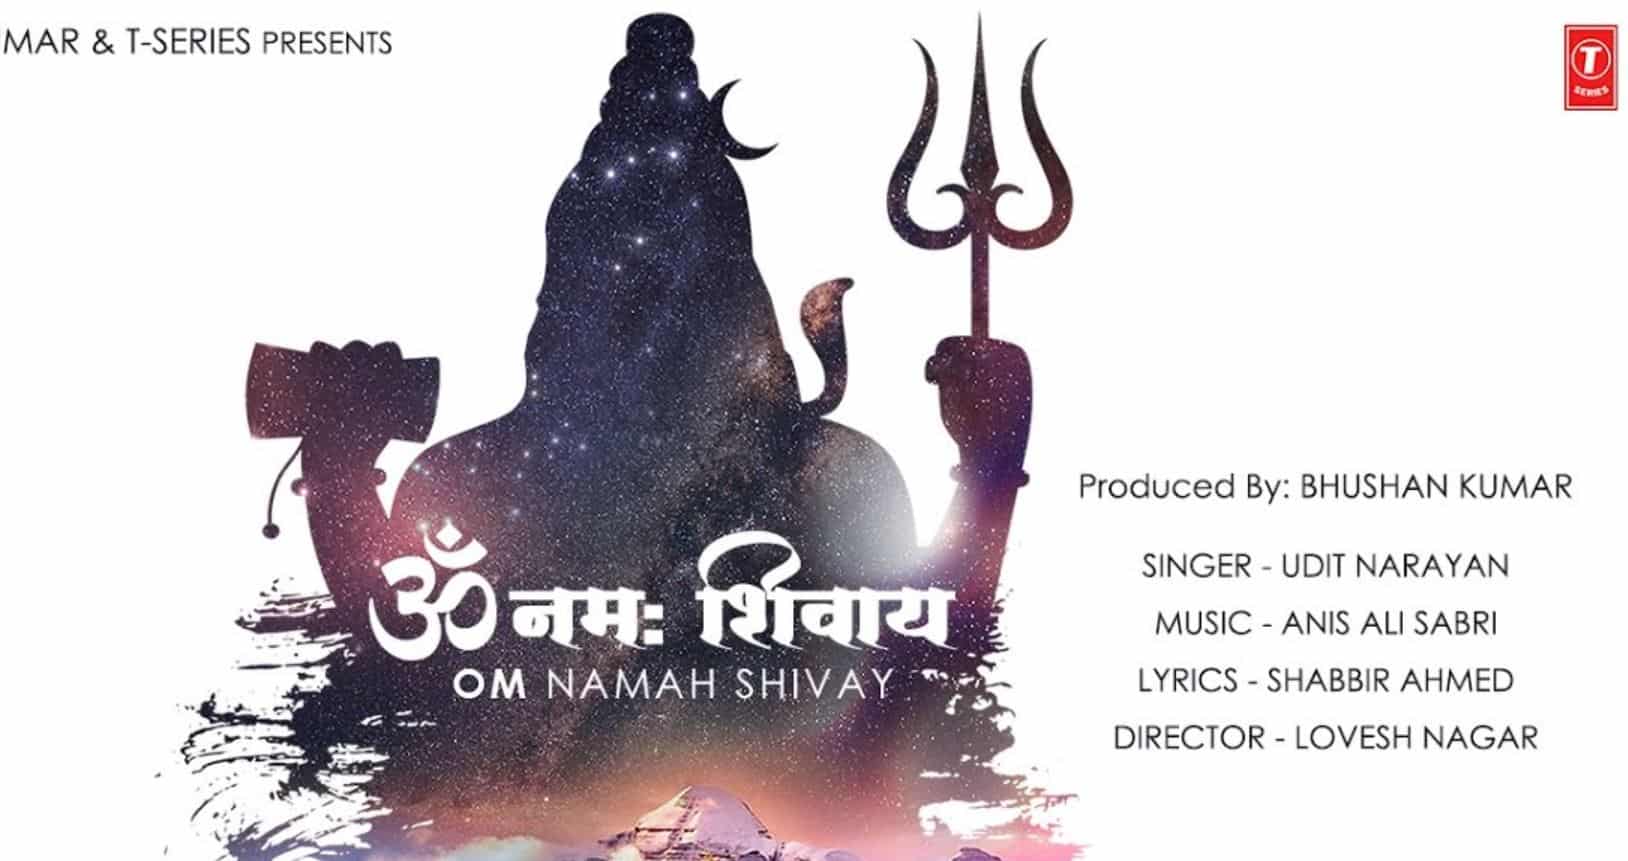 om namah shivaya song lyrics in hindi